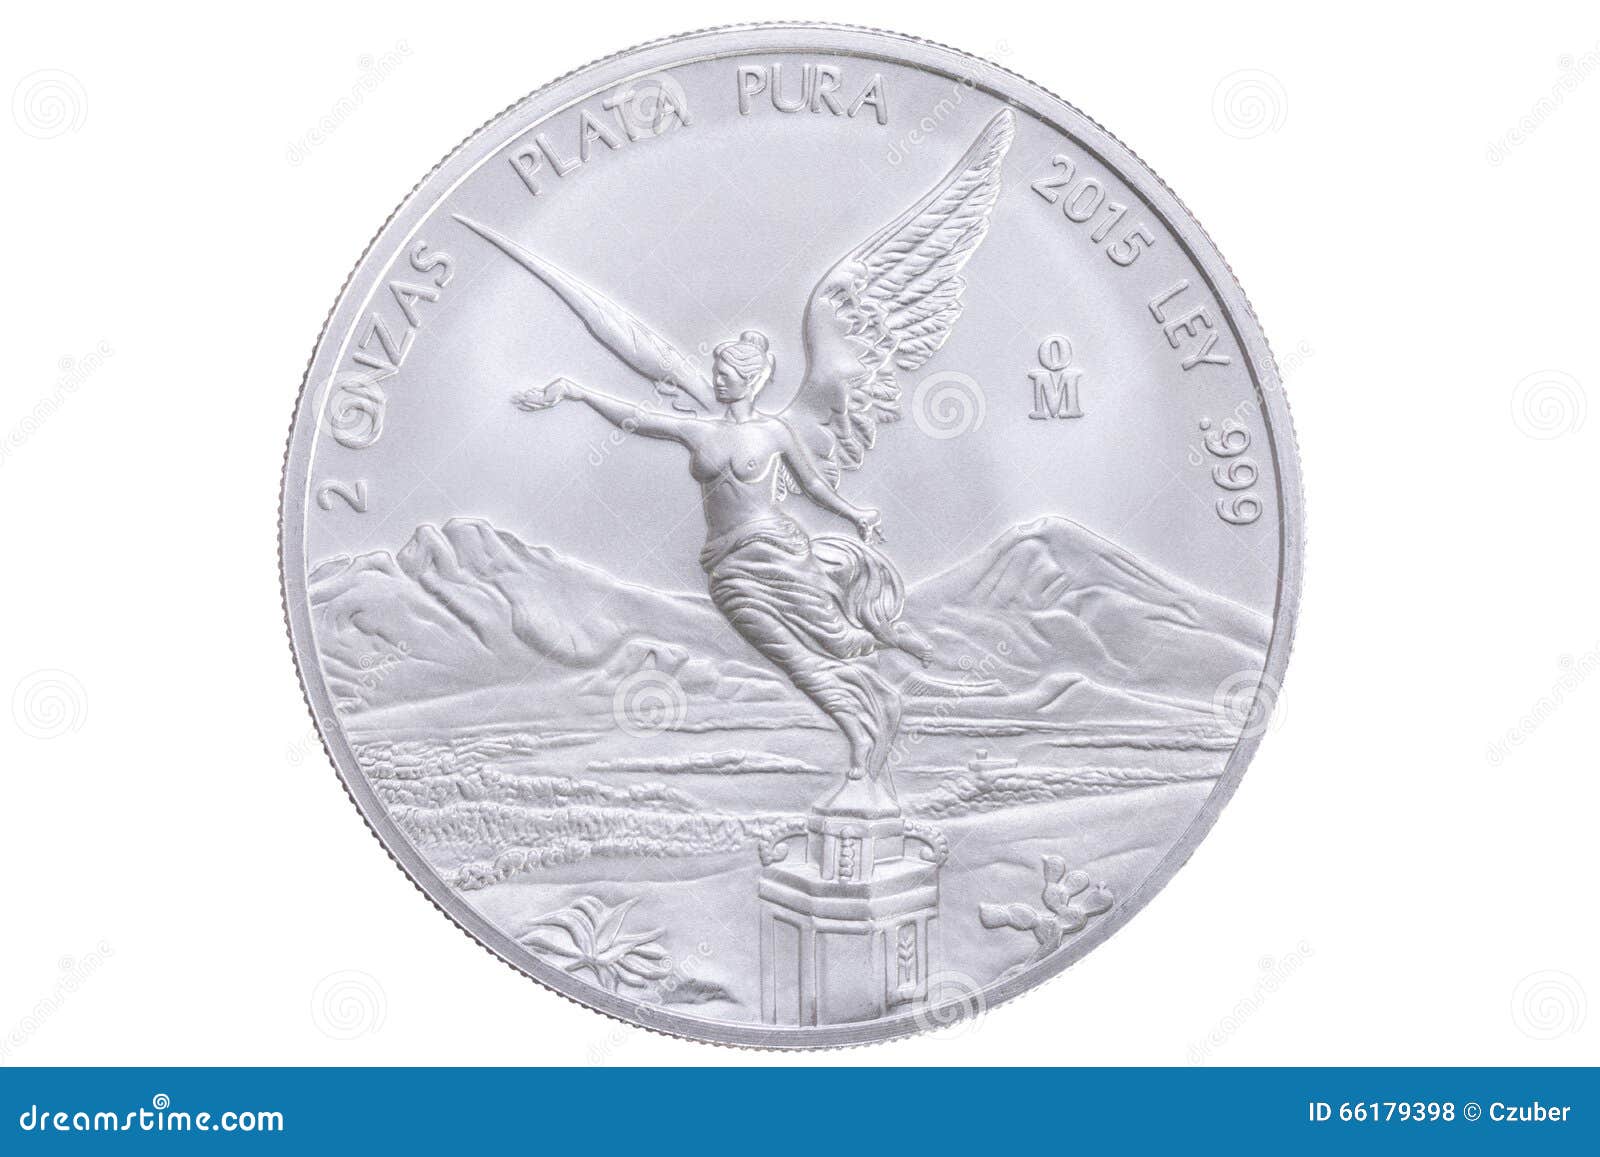 mexican silver libertad coin